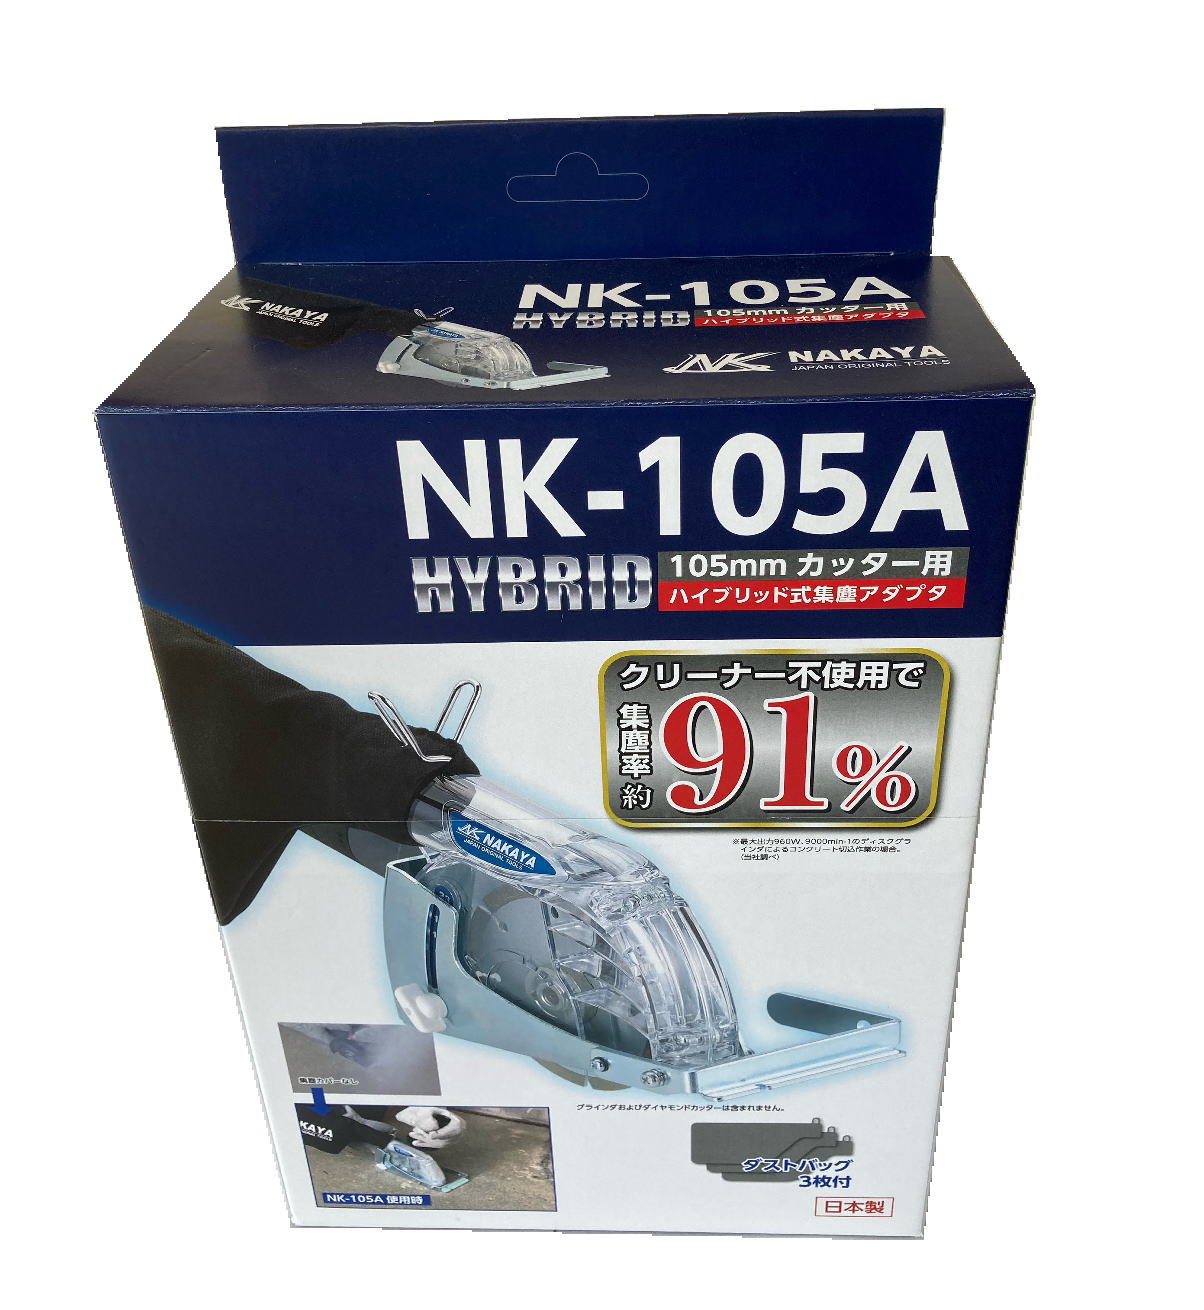 NK-105A | 株式会社ナカヤ